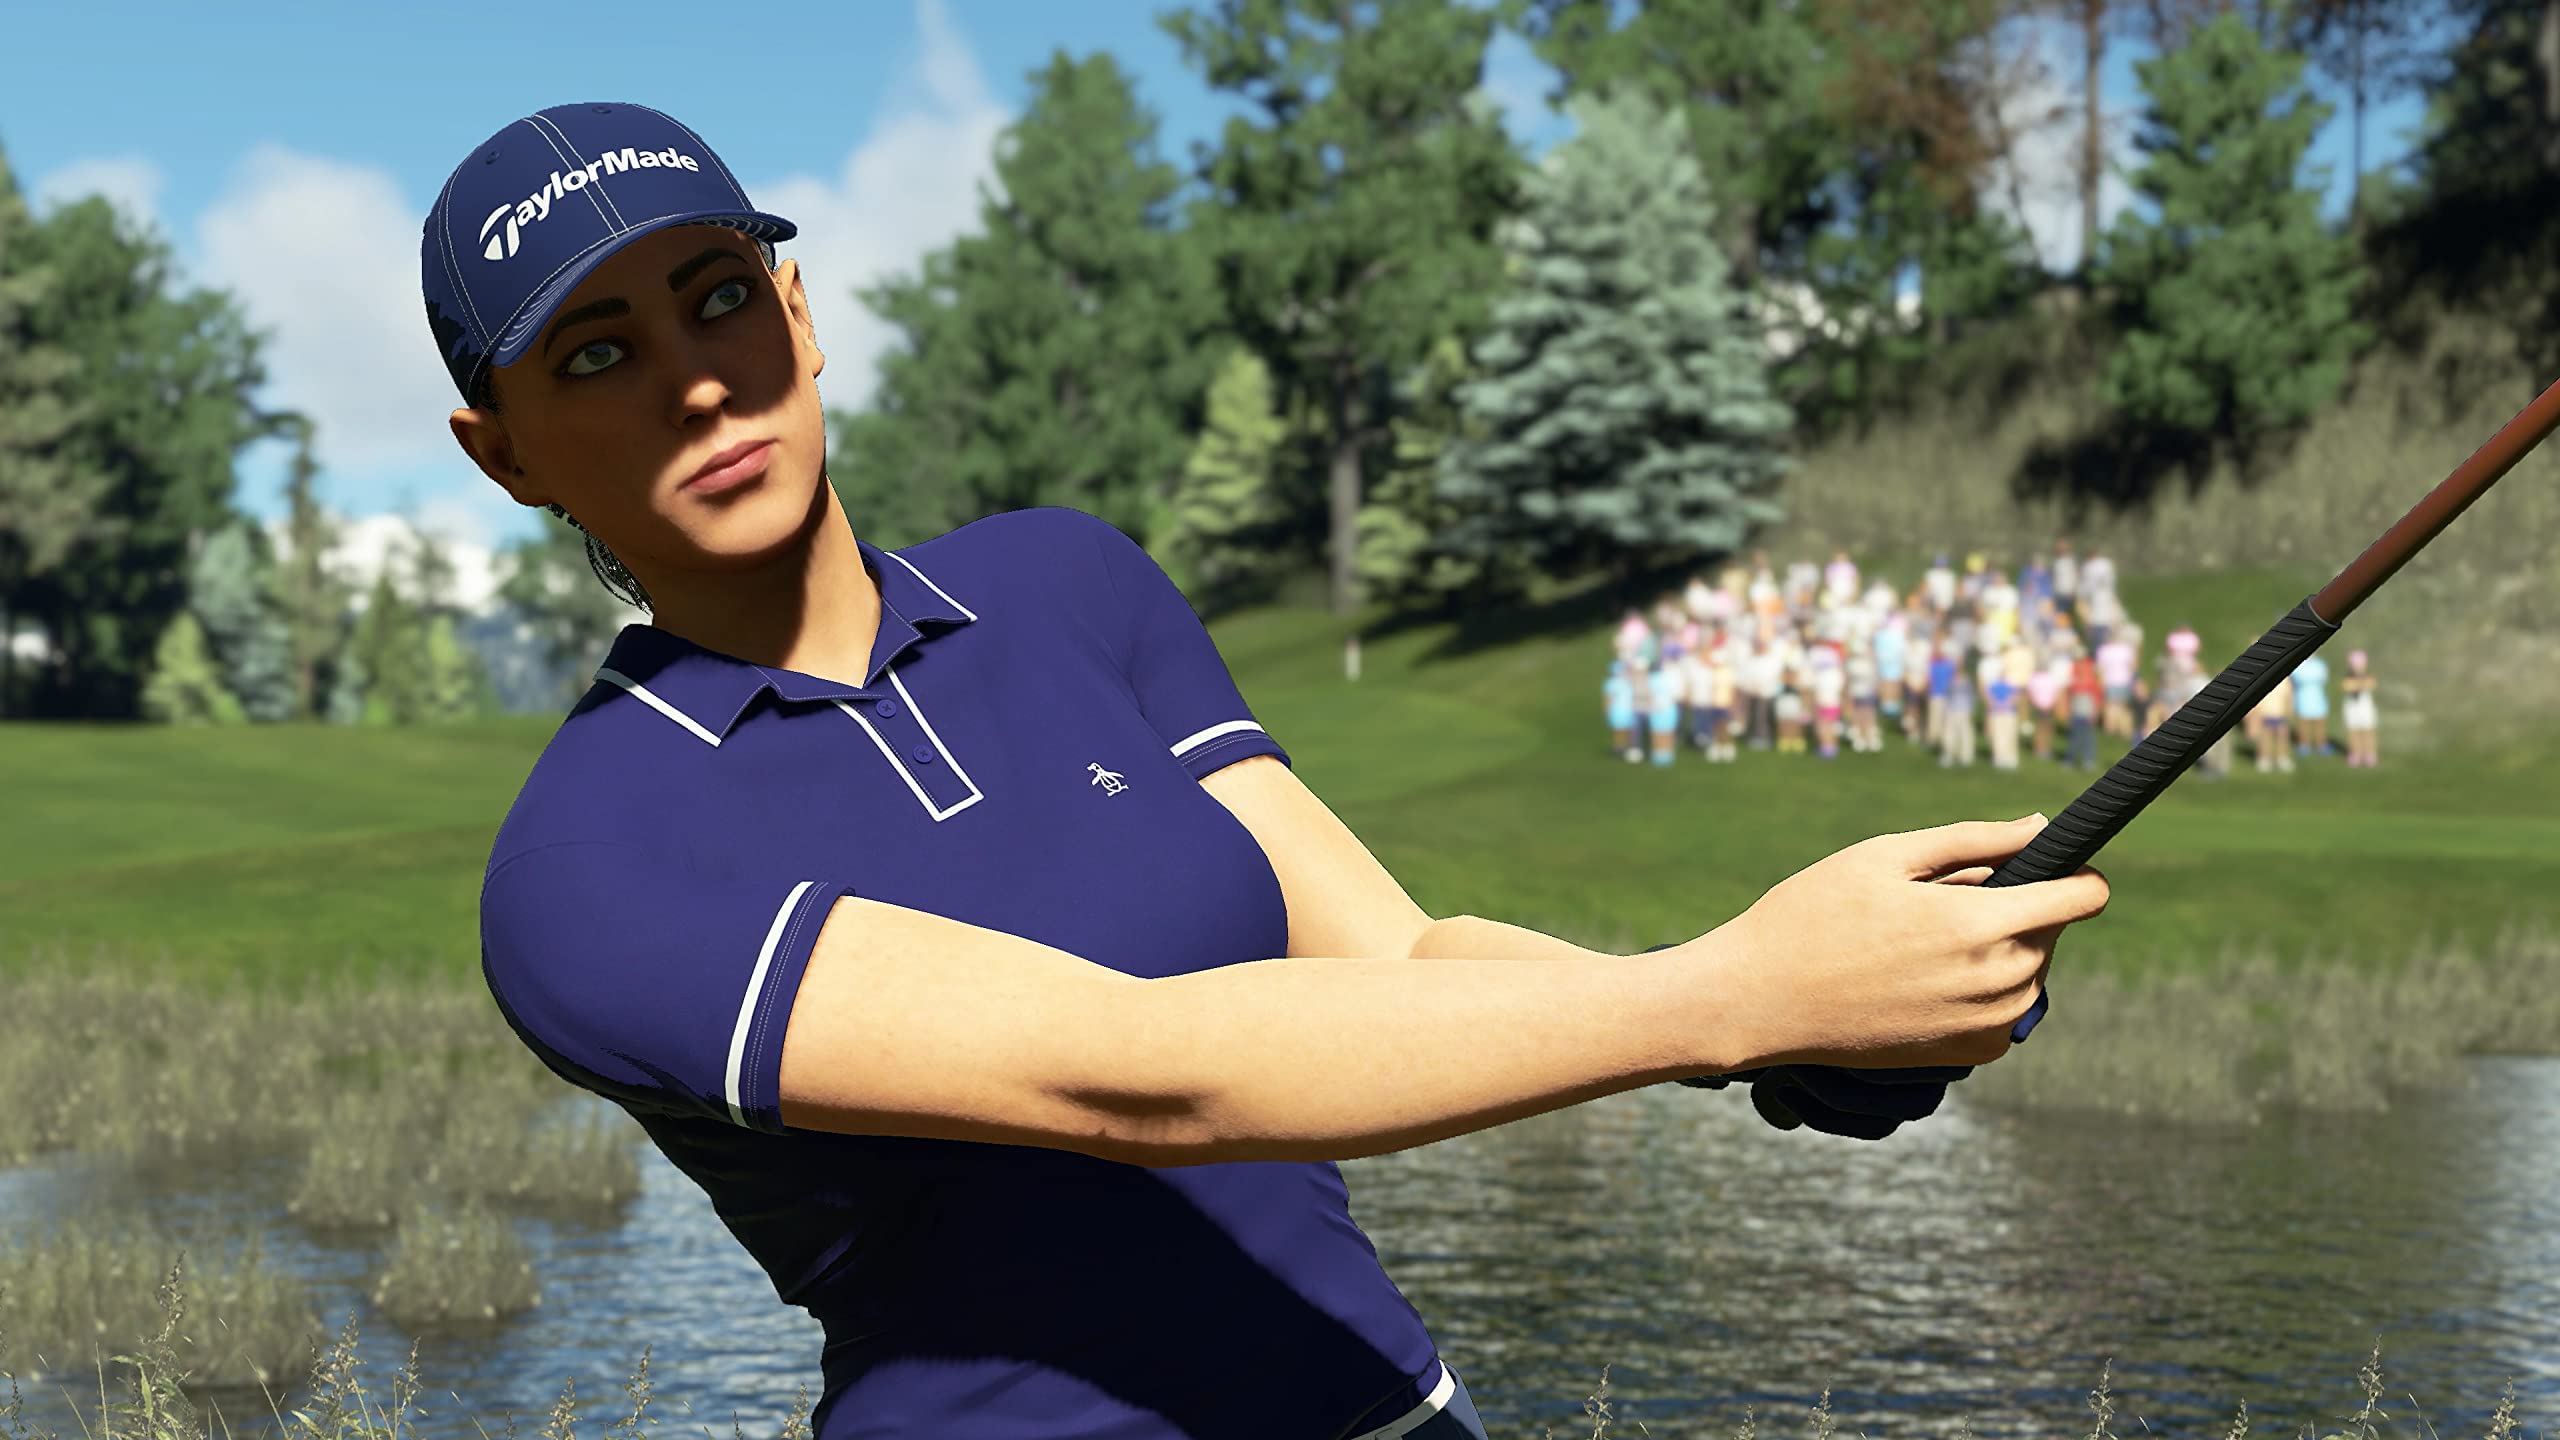 PGA Tour 2K23 - PlayStation 4